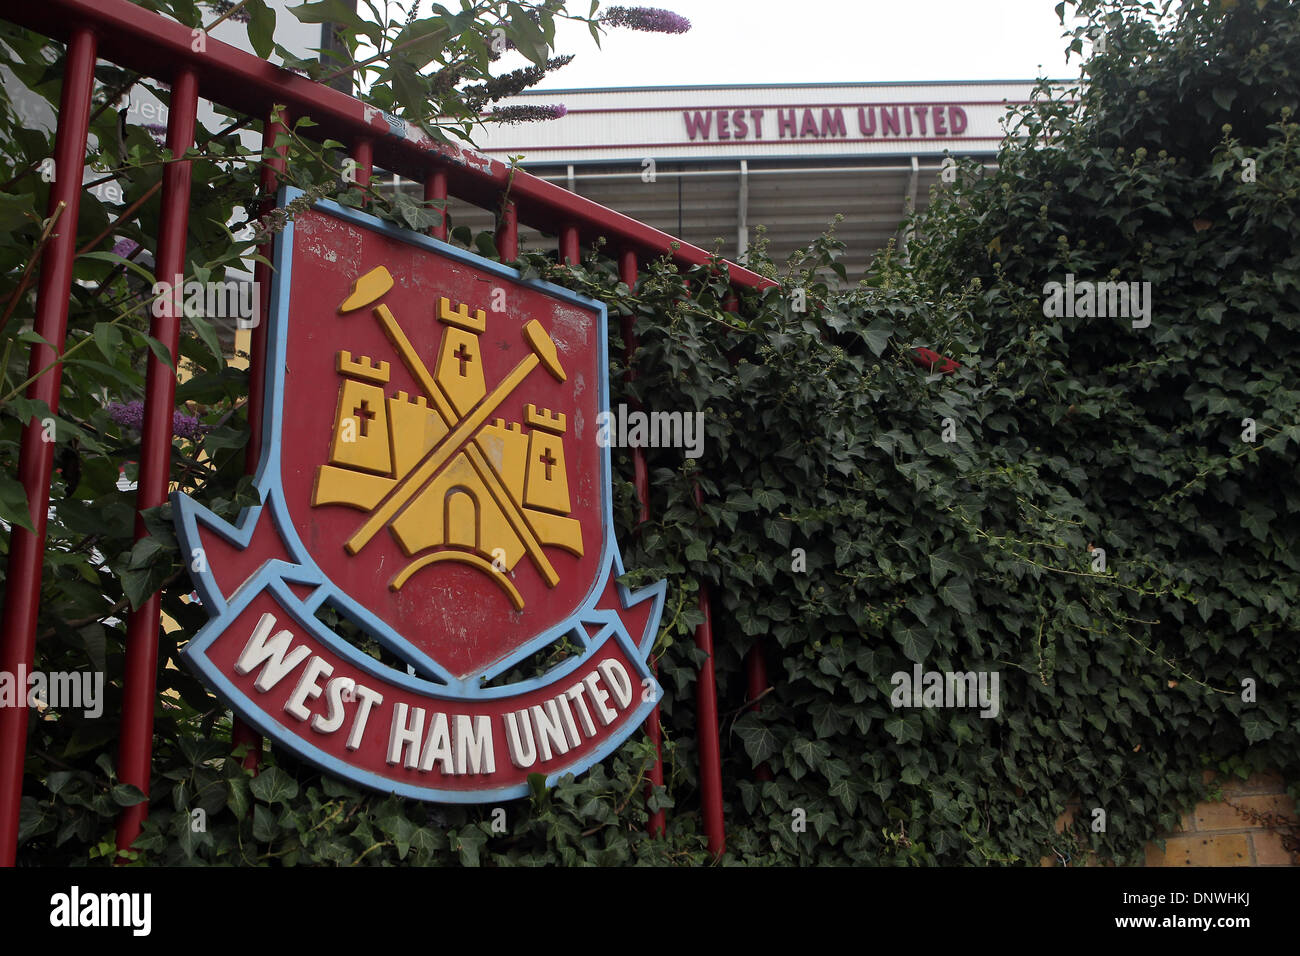 West Ham United Football Club à l'extérieur de l'insigne, Boleyn Ground Upton Park, Londres Banque D'Images